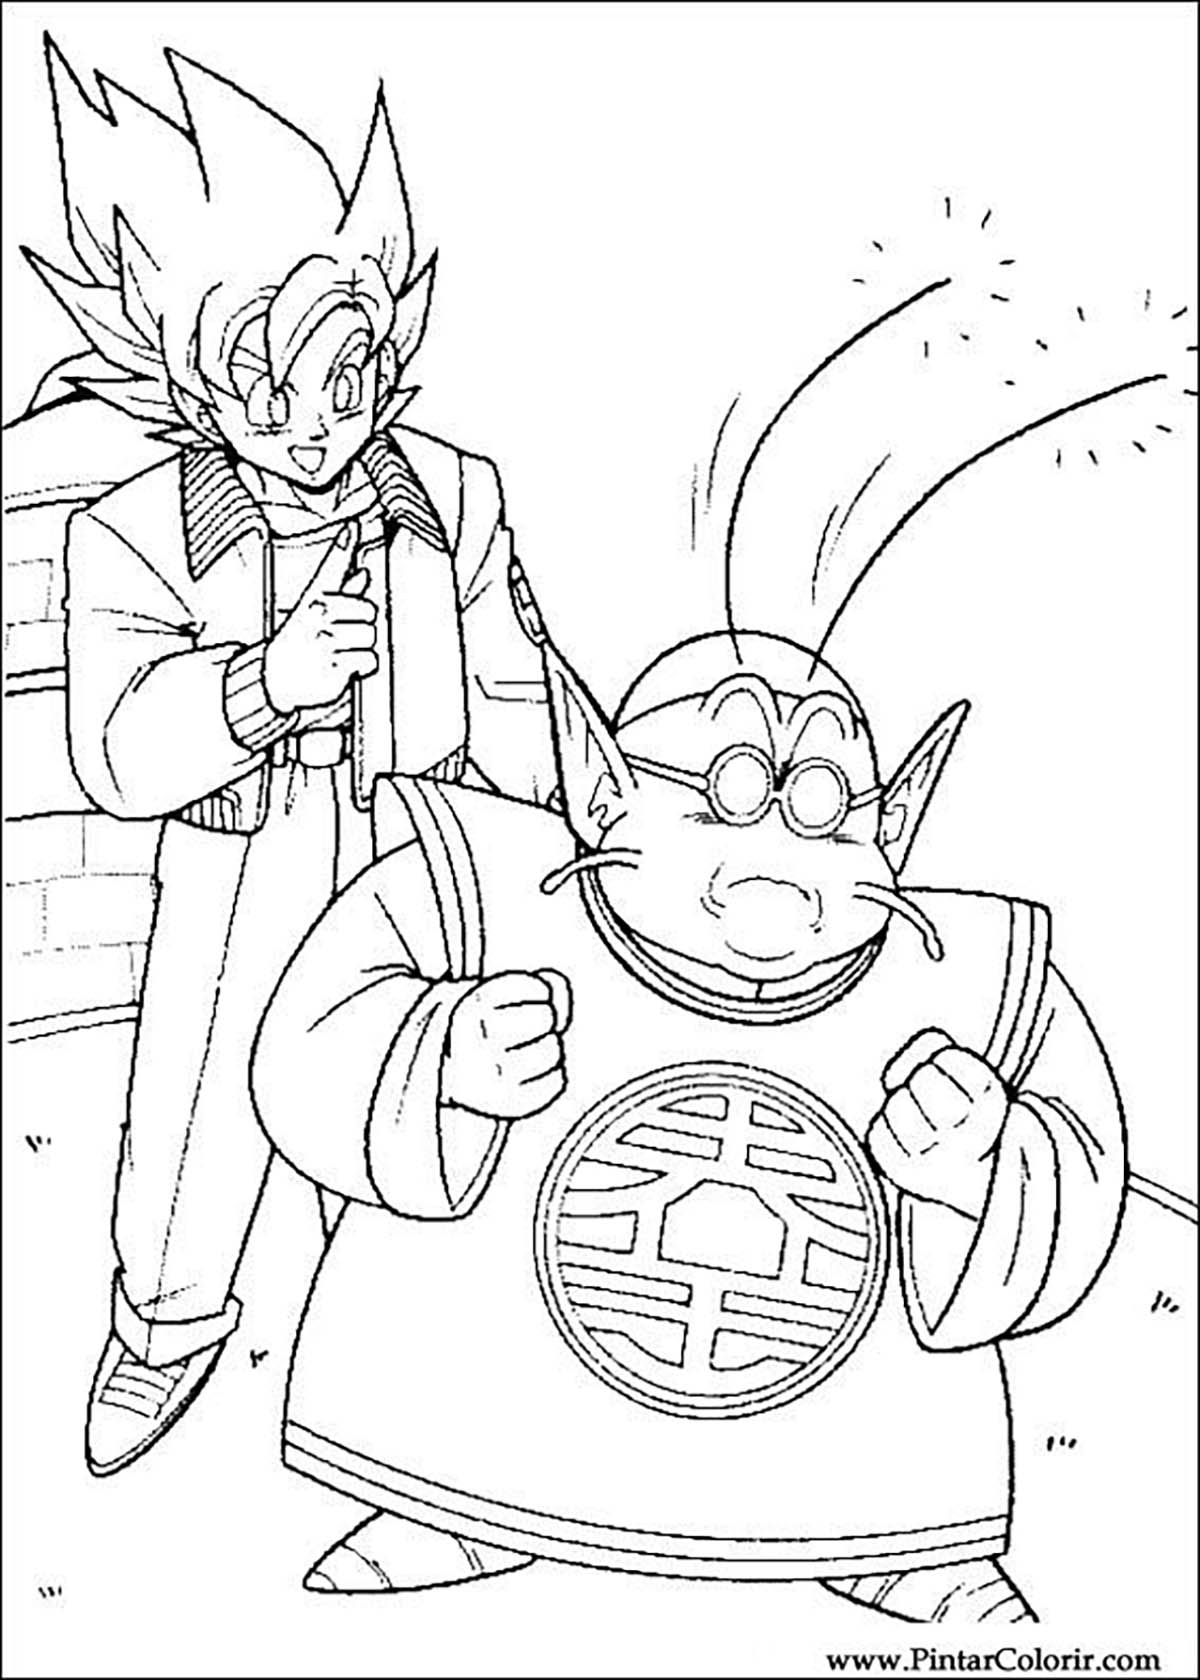 Dibujos para colorear gratis de Dragon Ball Z para imprimir y colorear